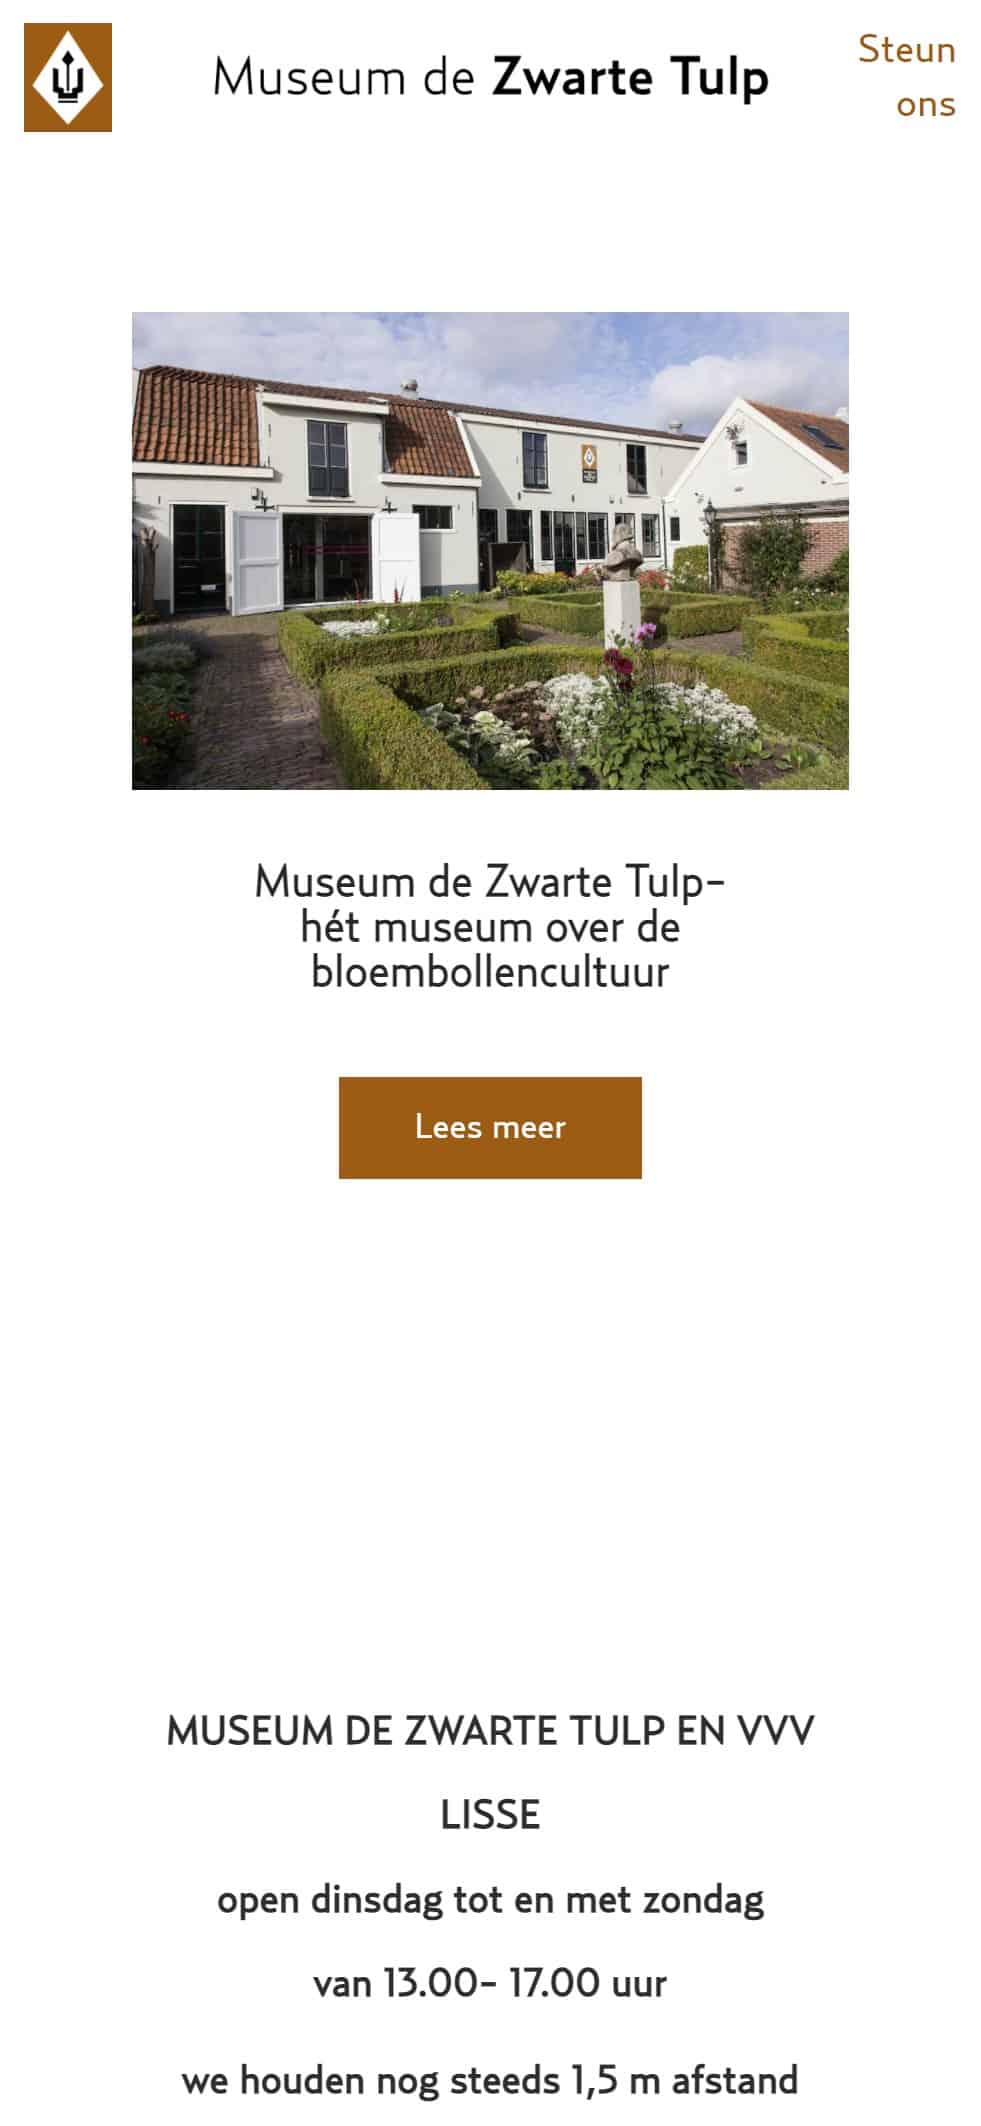 Museum de Zwarte Tulp website - mobiel